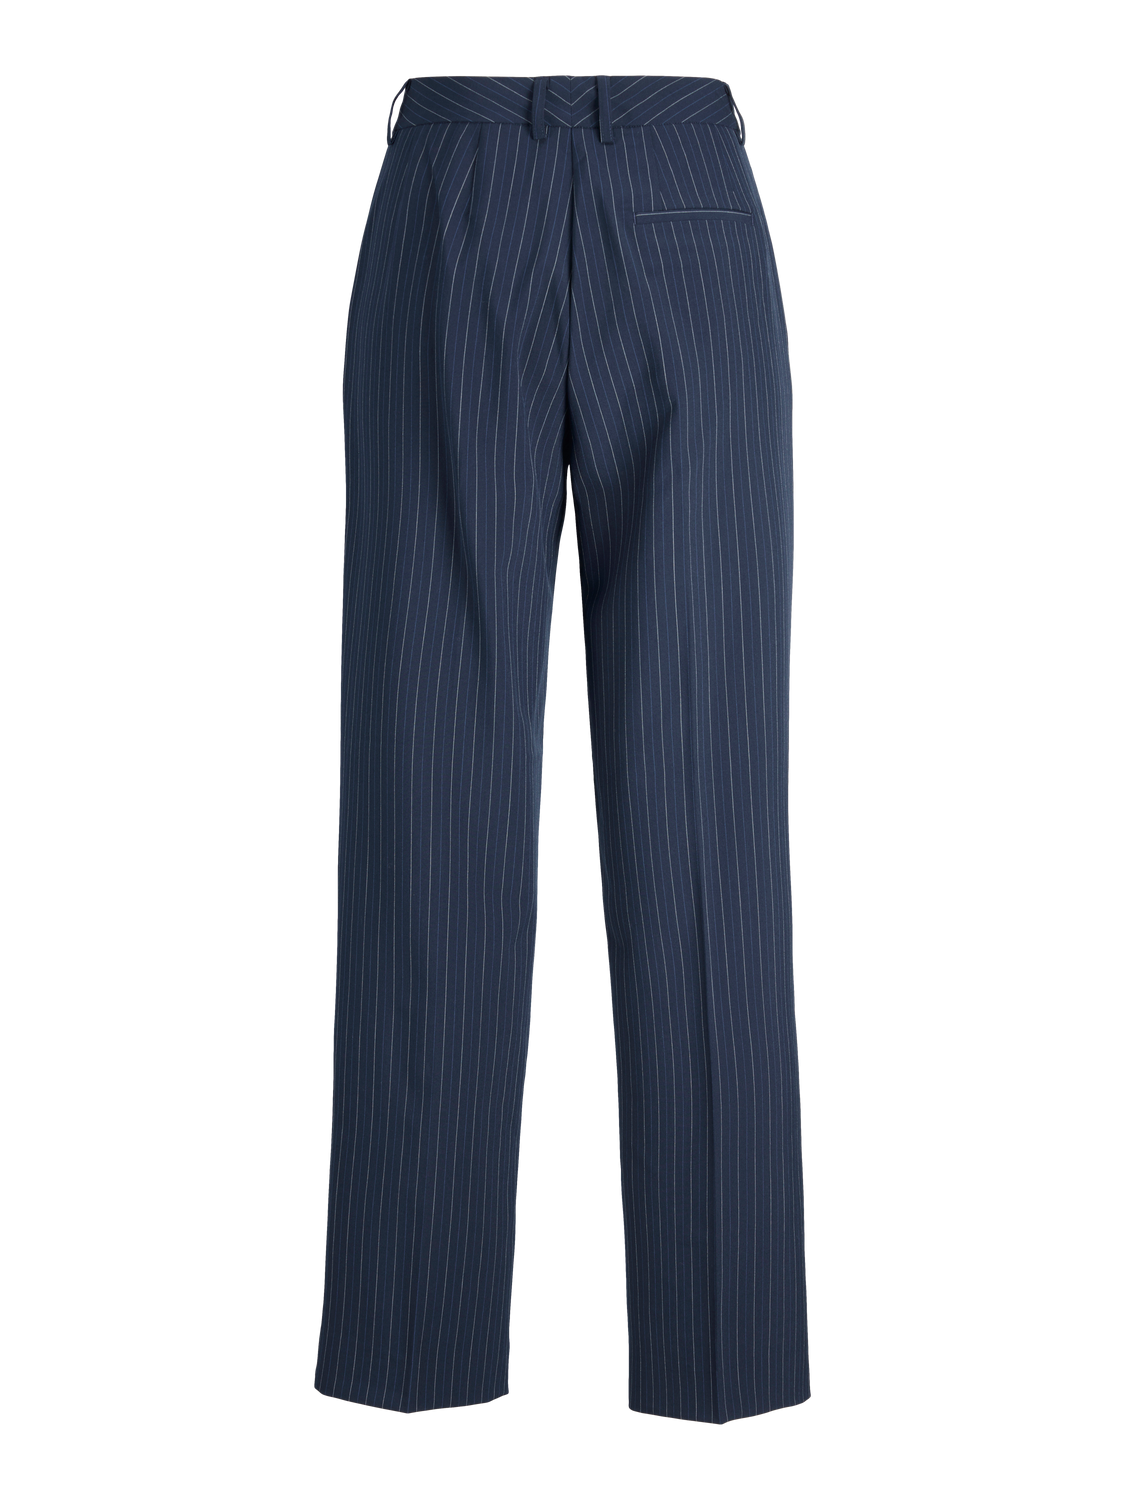 JJXX JXMARY Klasyczne spodnie -Navy Blazer - 12209070